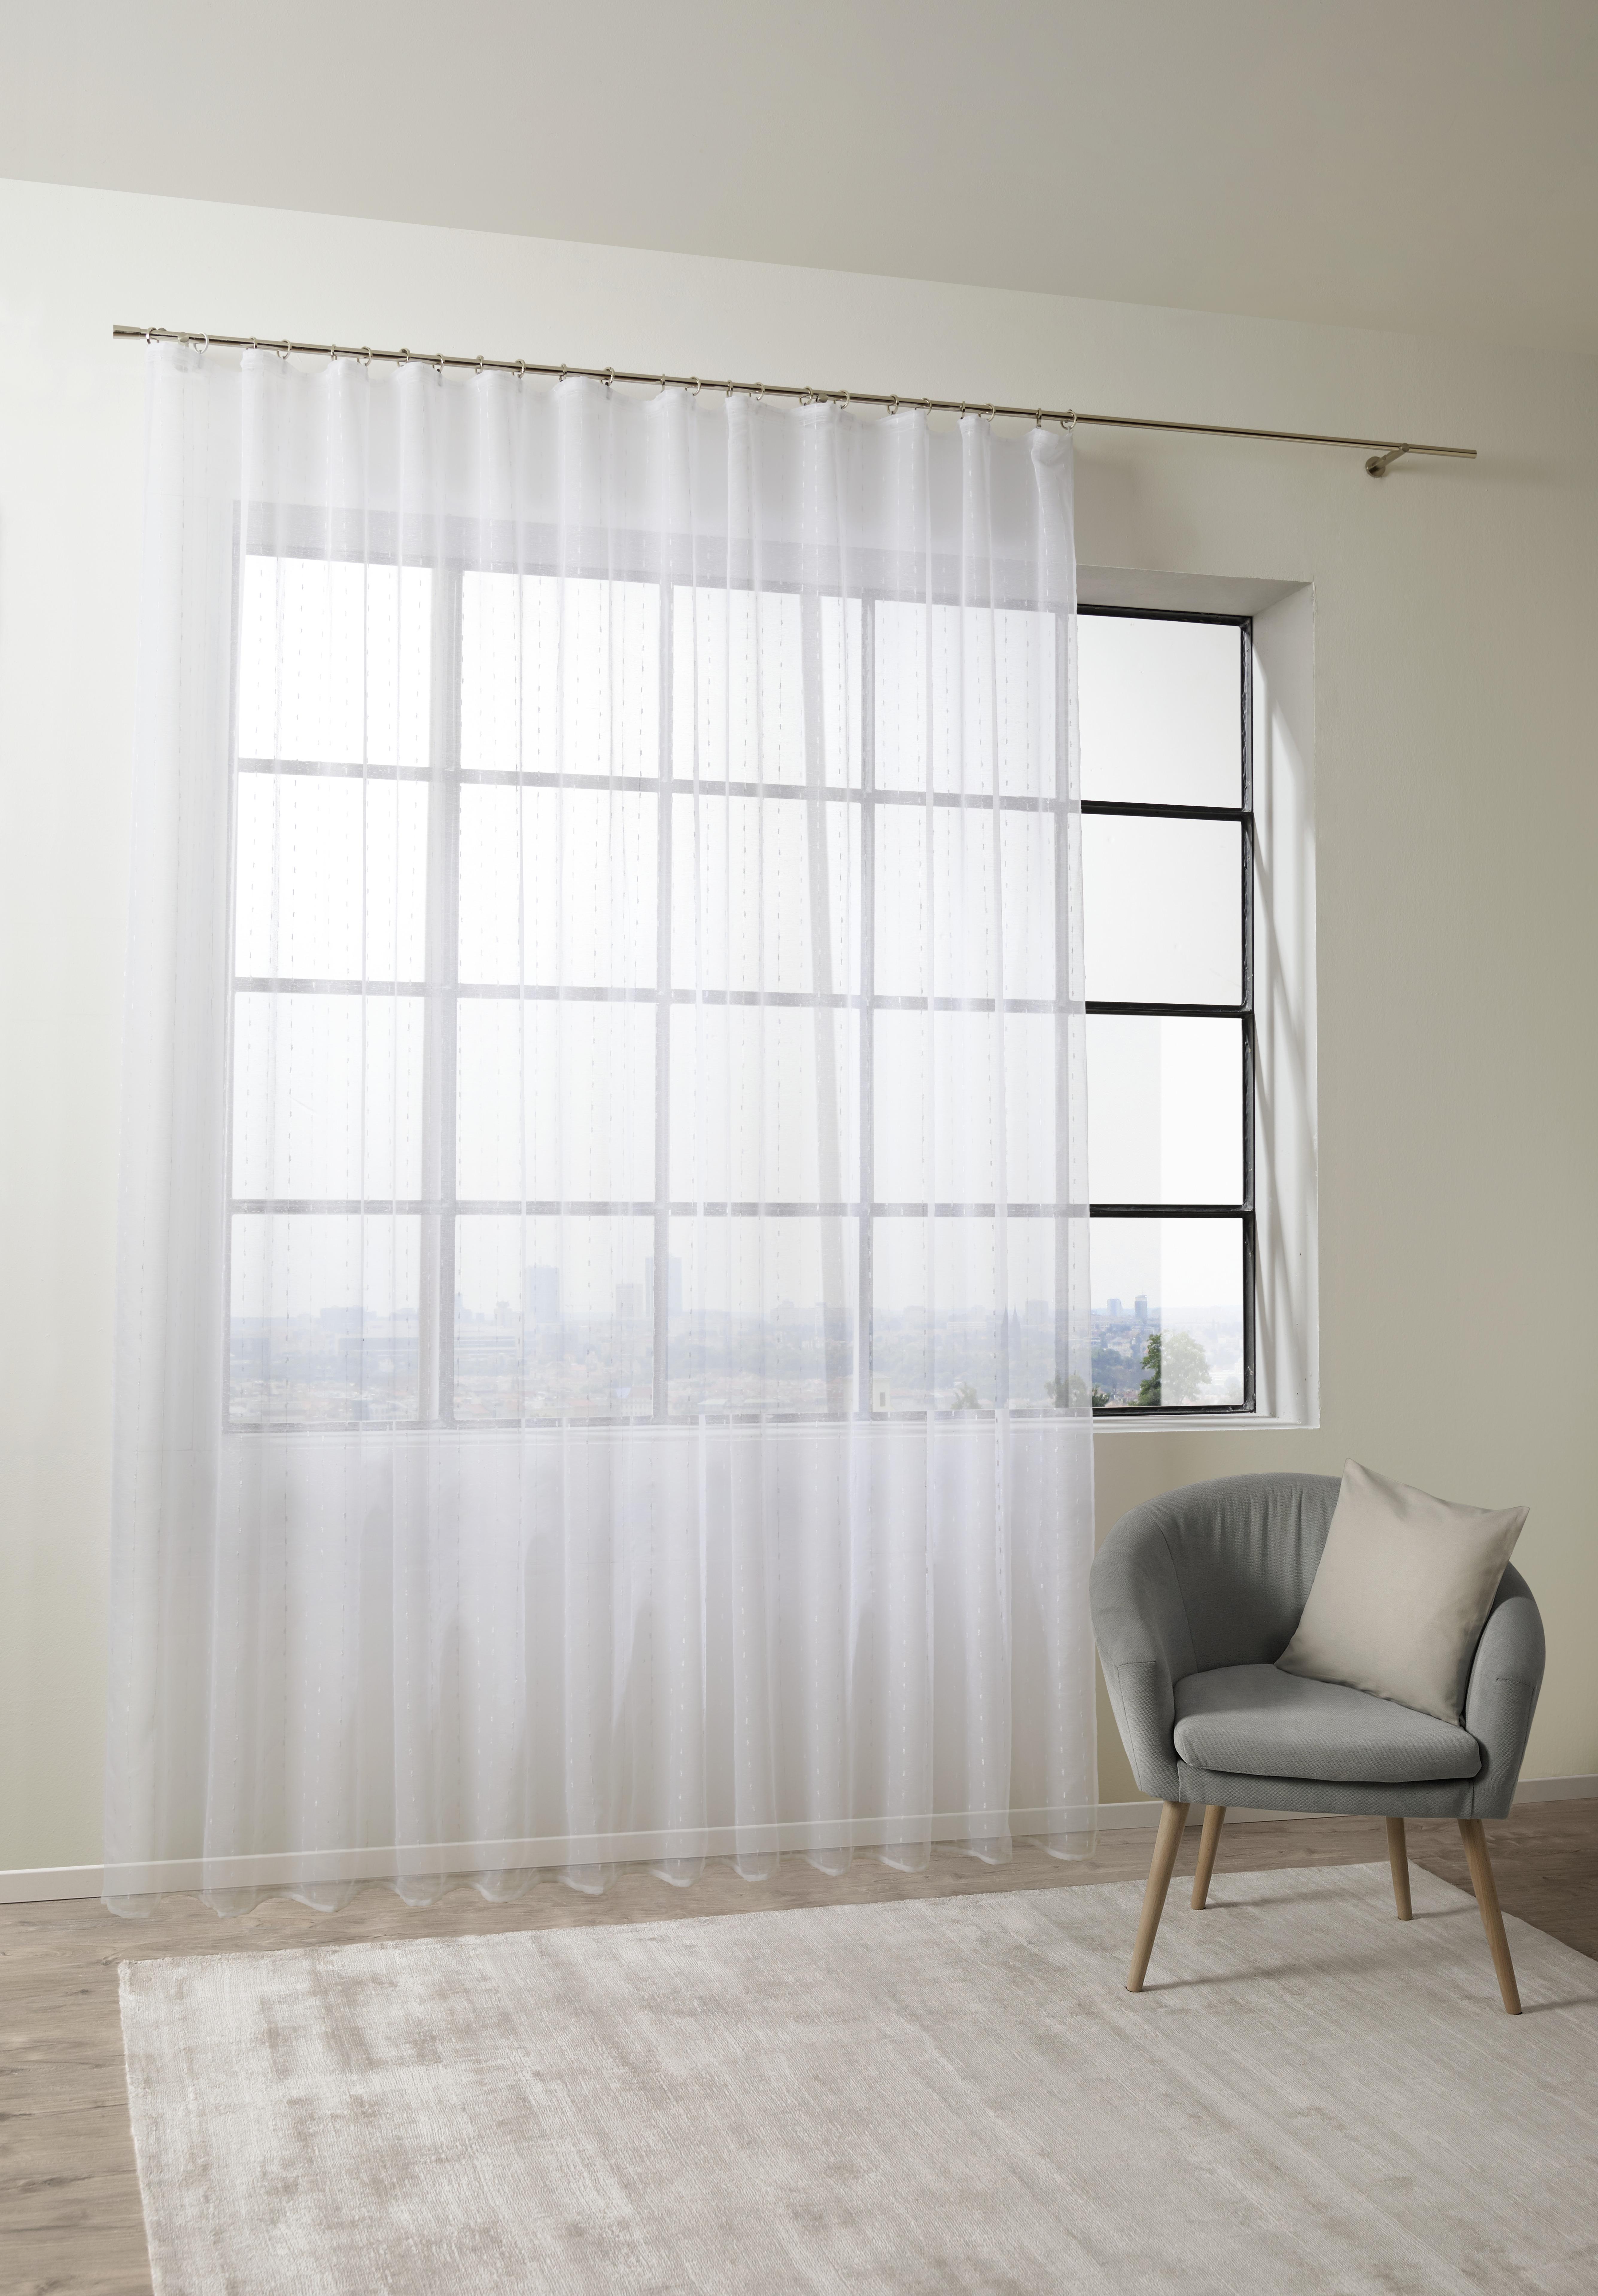 Kusová Záclona Lisa Store 3, 300/245cm - bílá, Romantický / Rustikální, textil (300/245cm) - Modern Living